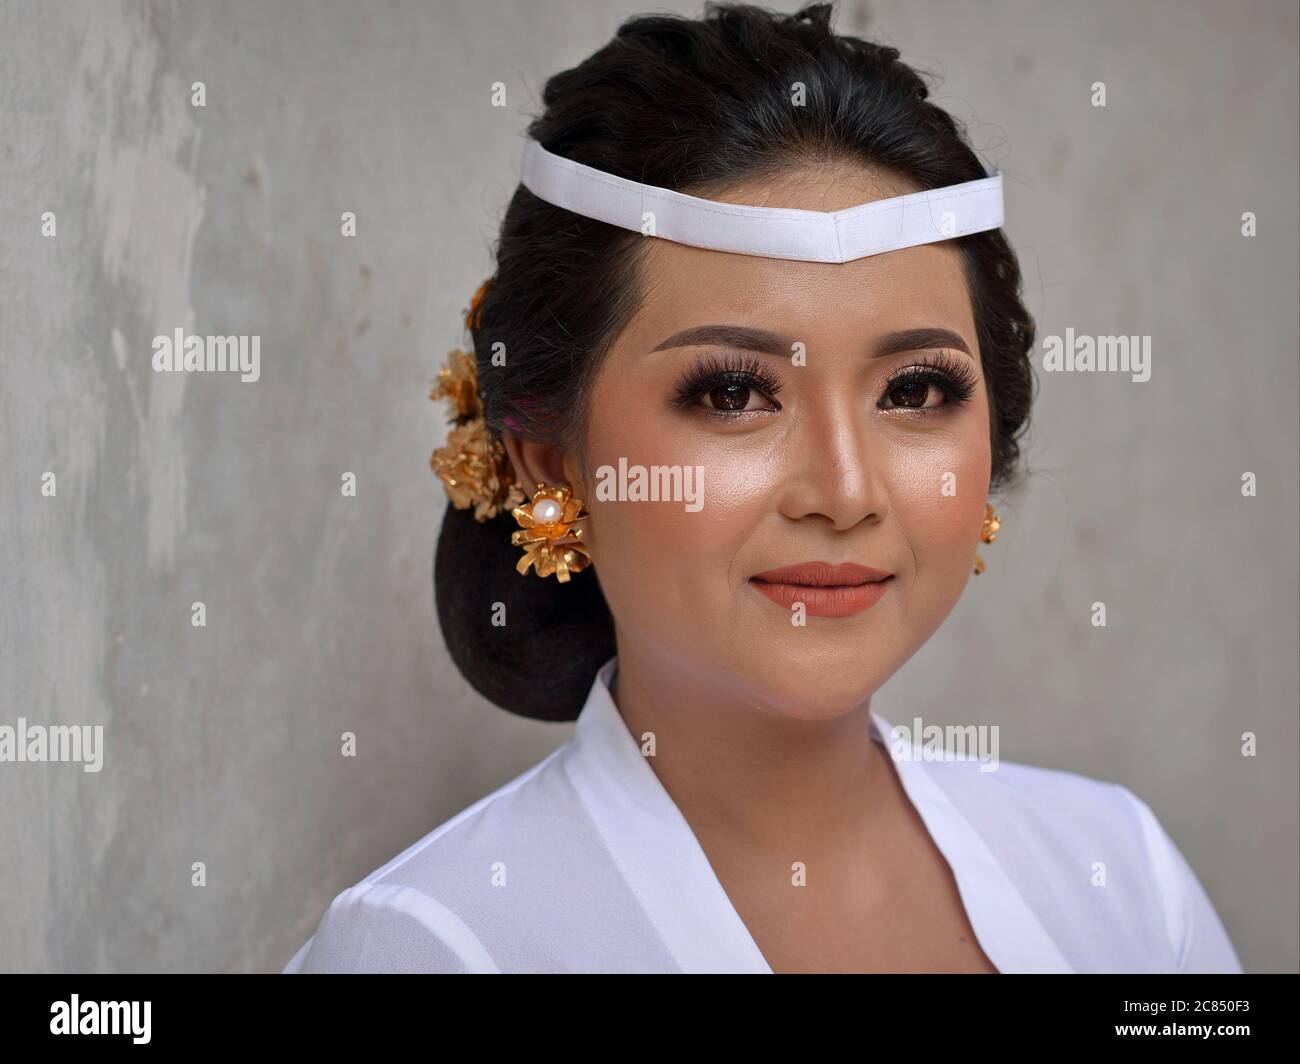 Belle femme indonésienne balinaise porte une tenue blanche et pose pour la caméra lors d'une cérémonie religieuse de temple hindou (festival Odalan). Banque D'Images